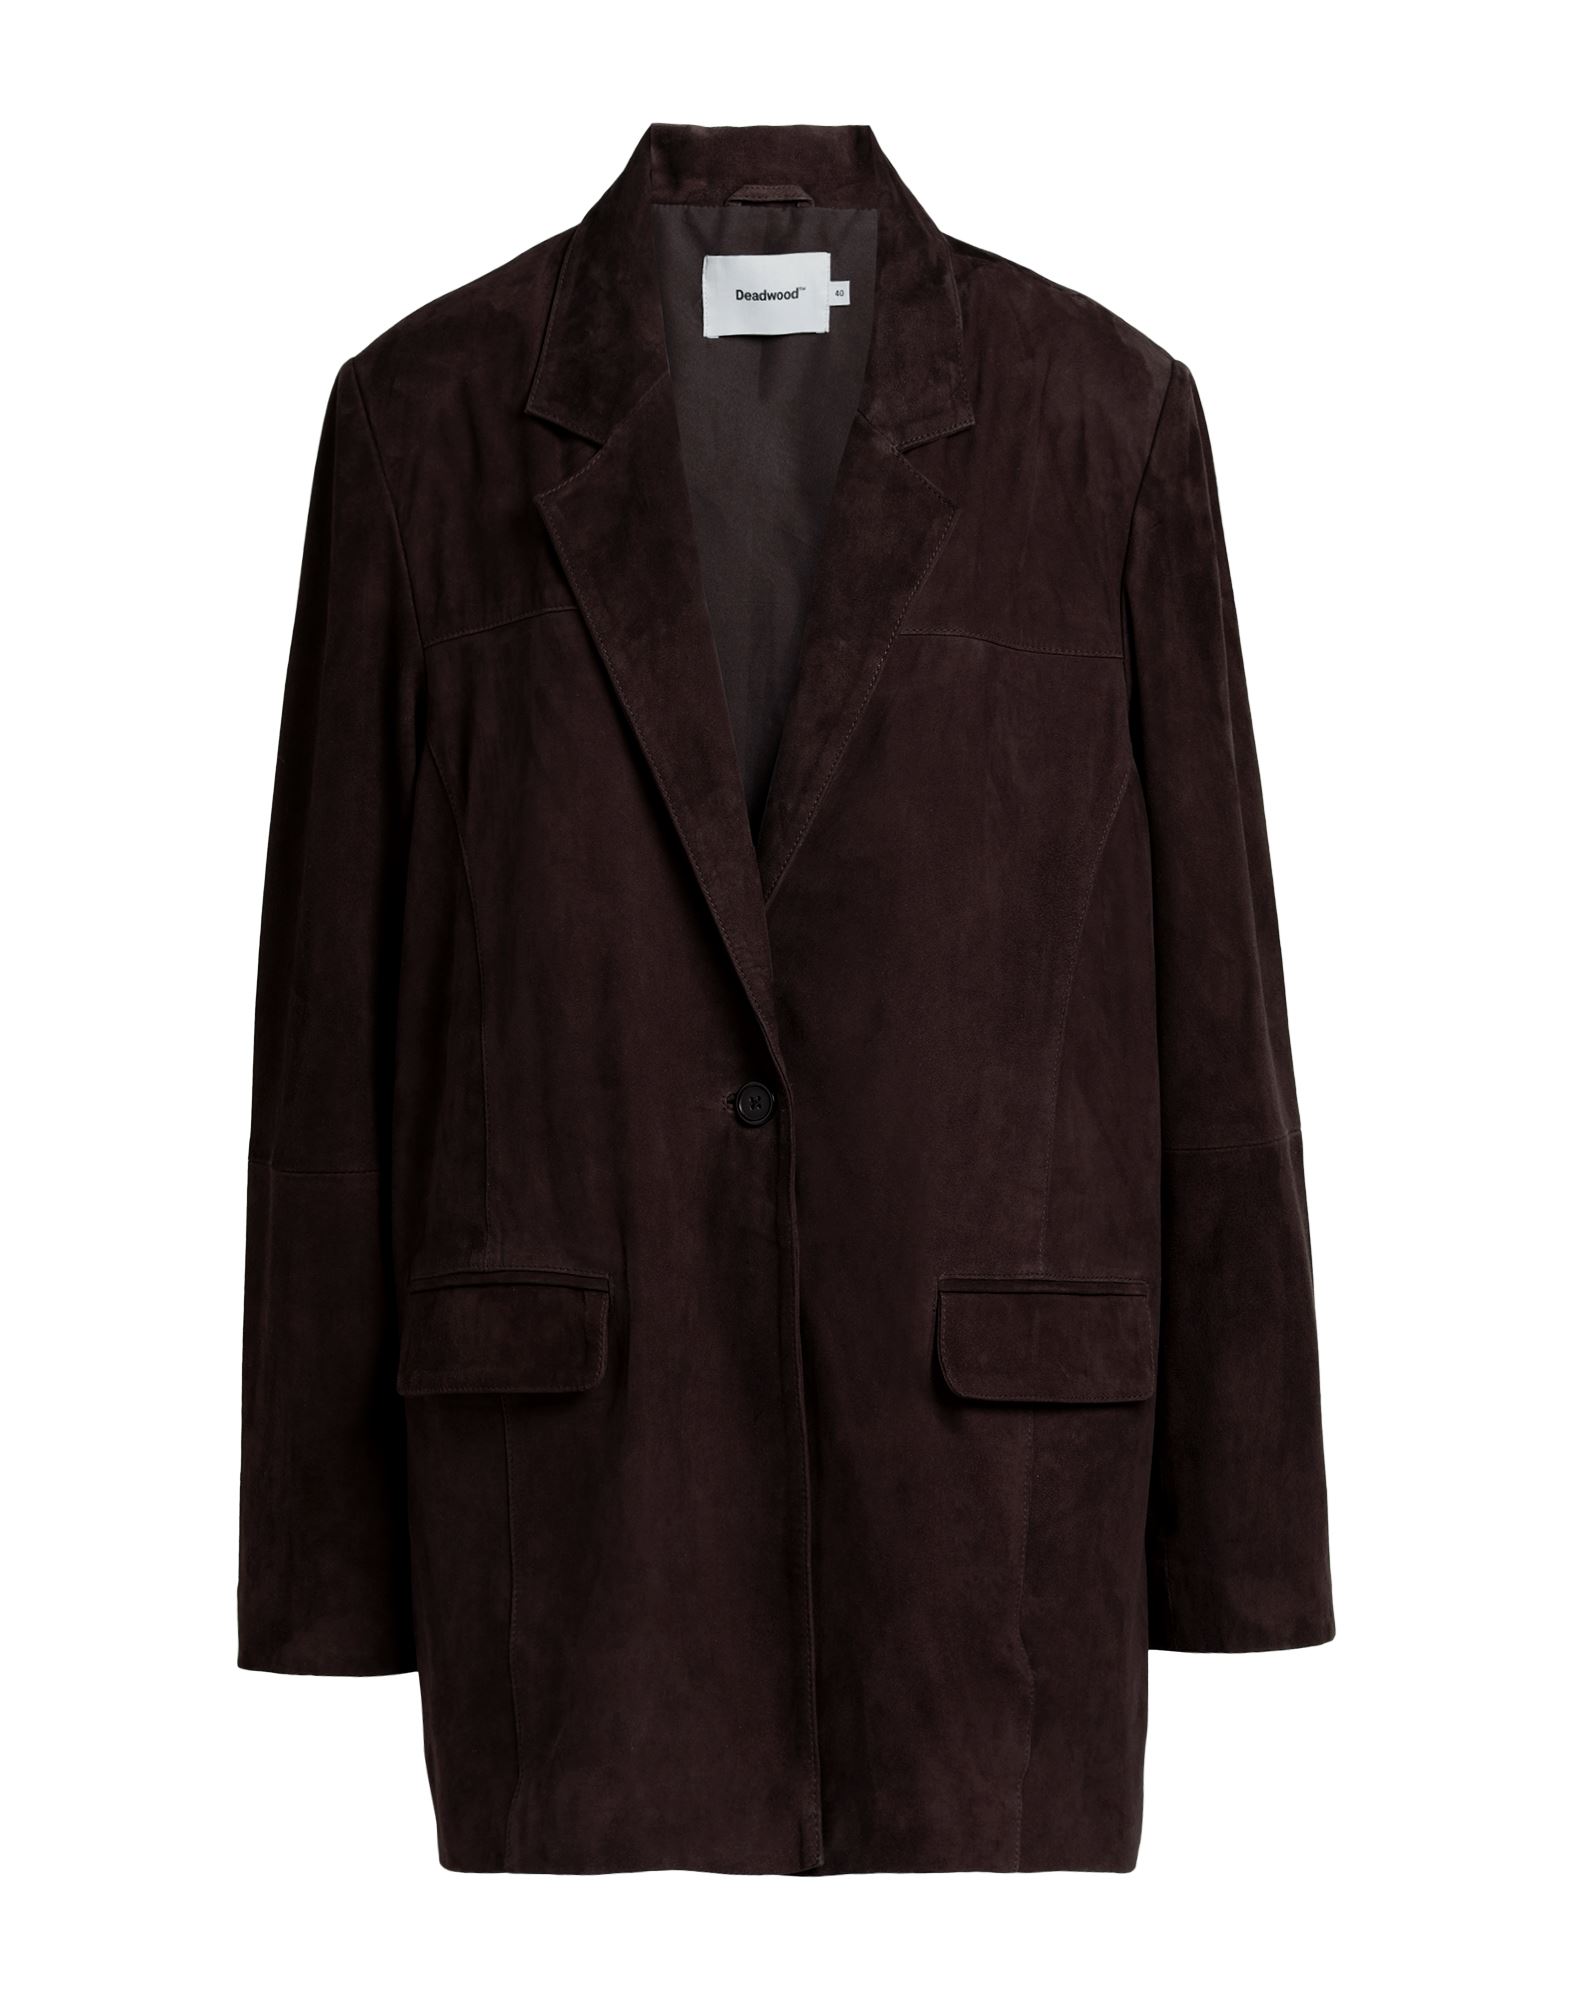 DEADWOOD Suit jackets